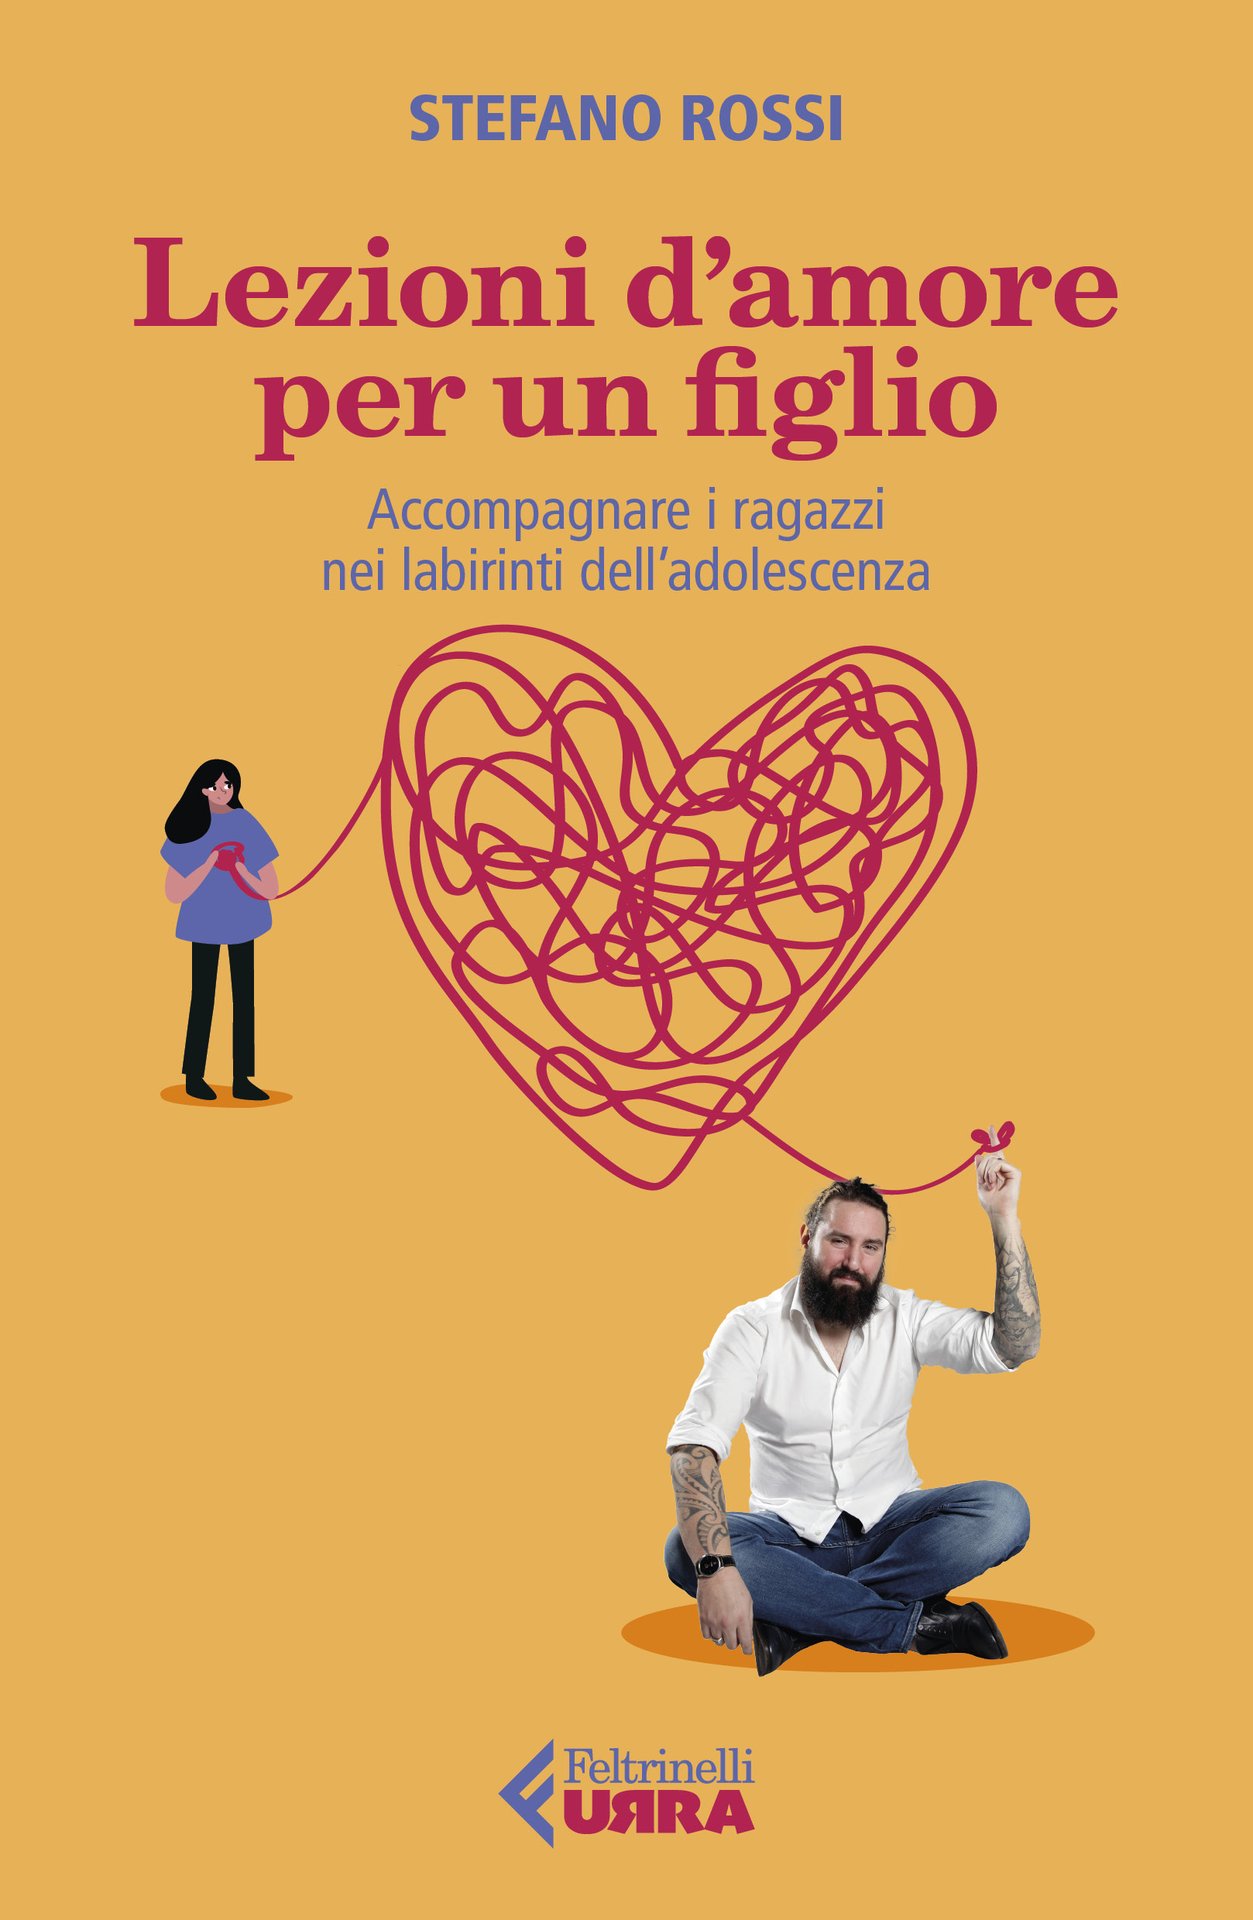 Stefano Rossi presenta "Lezioni d'amore per un figlio" al Teatro Asioli - Correggio